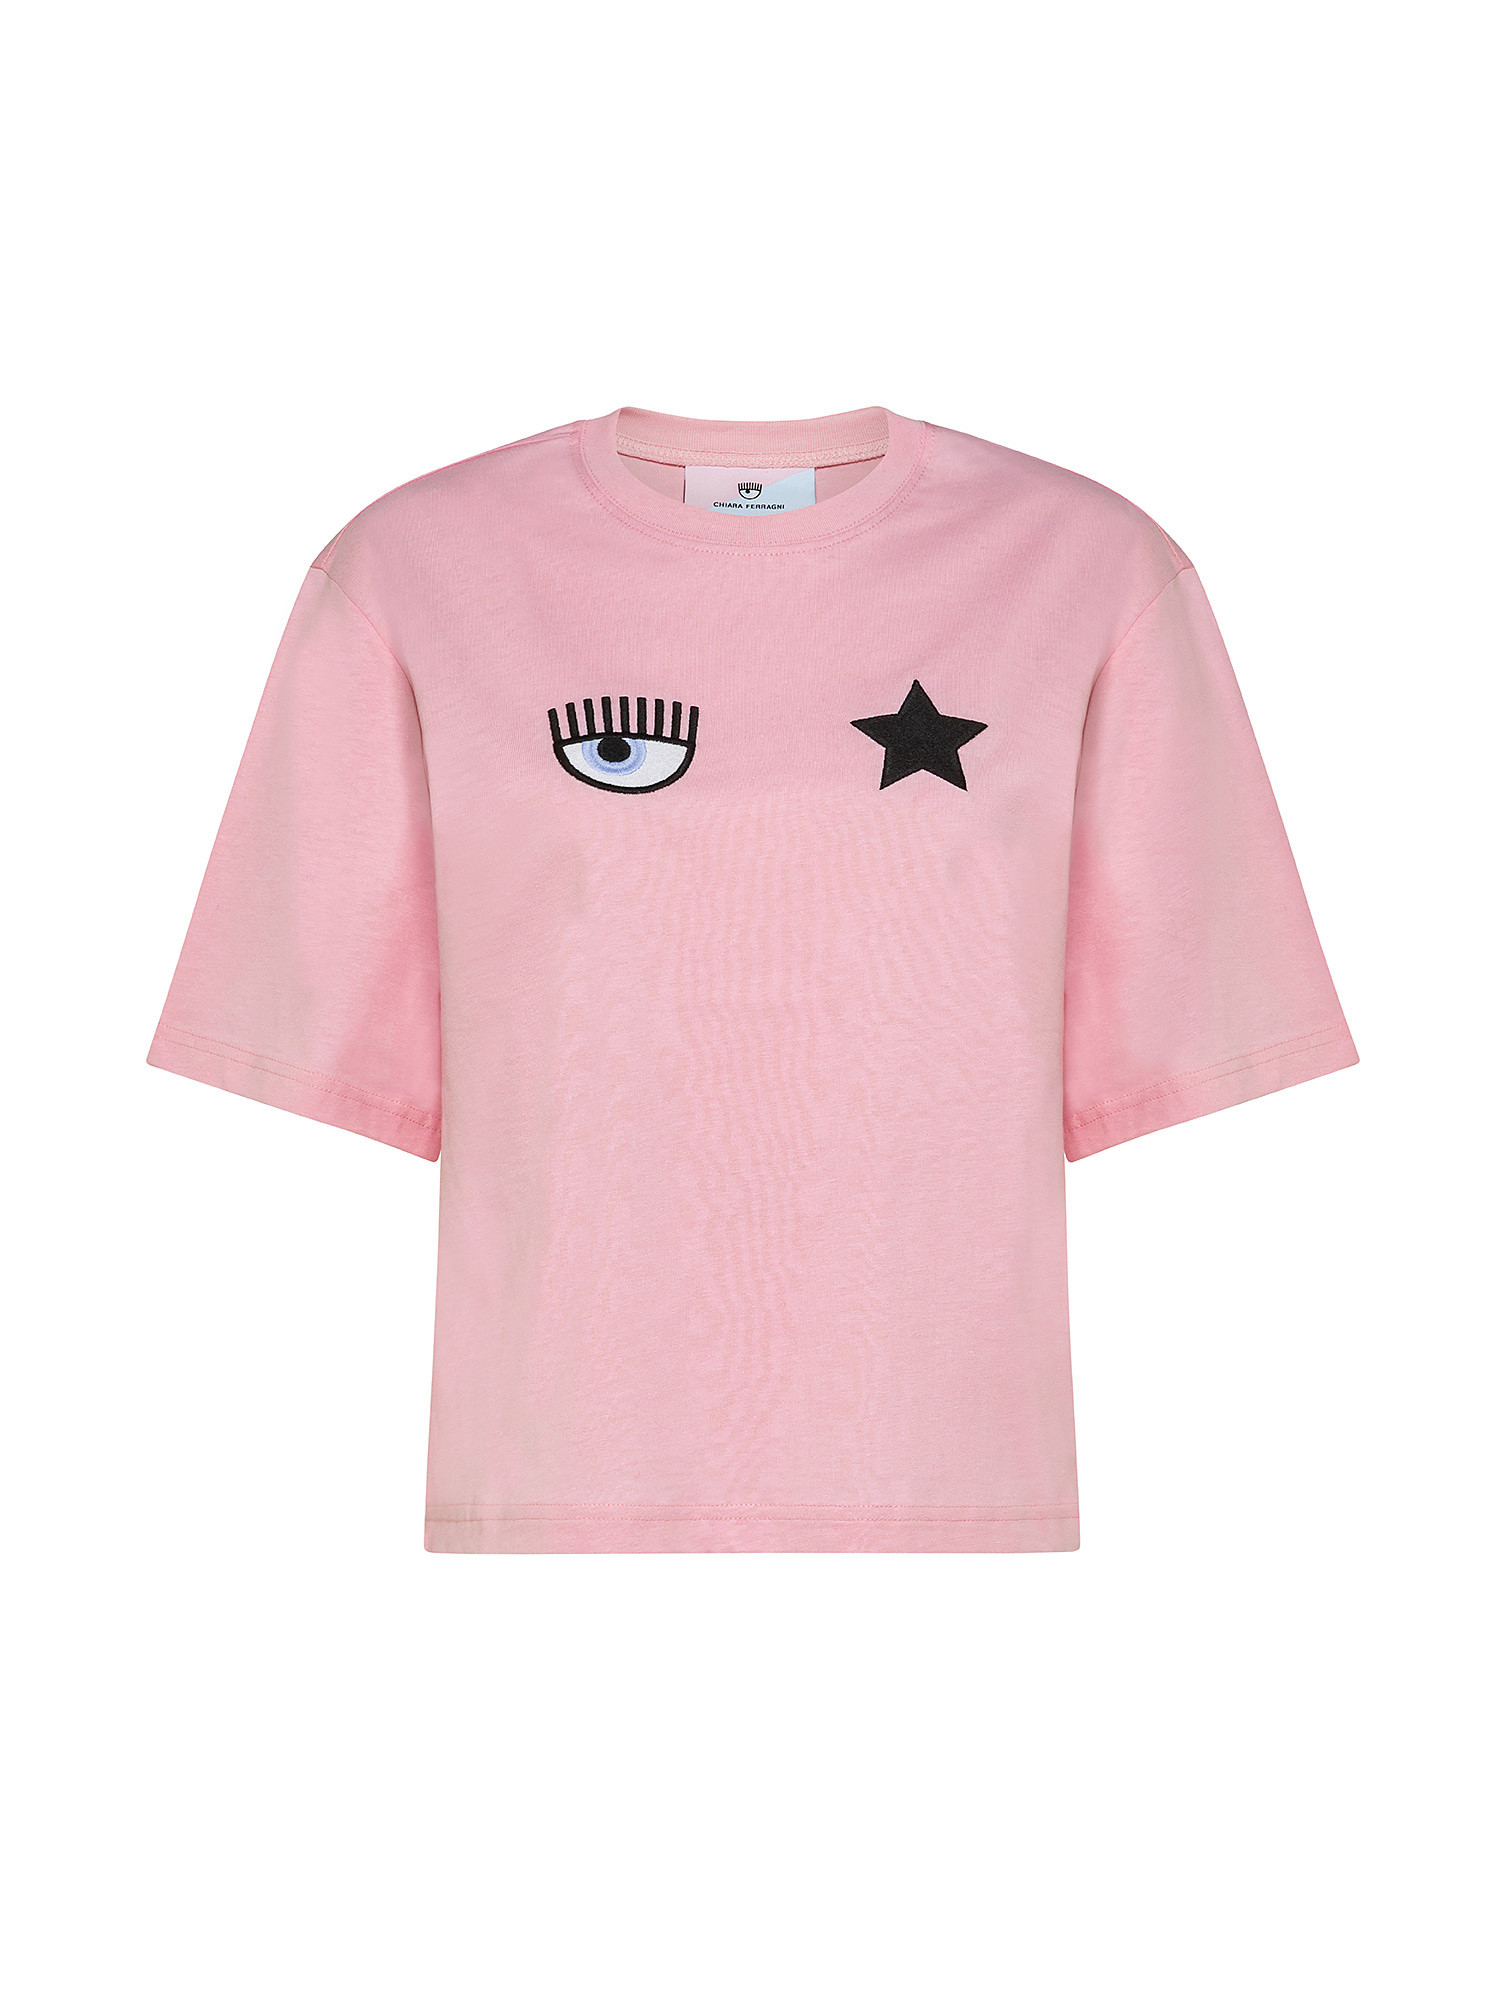 Eye Star T-shirt, Pink, large image number 0